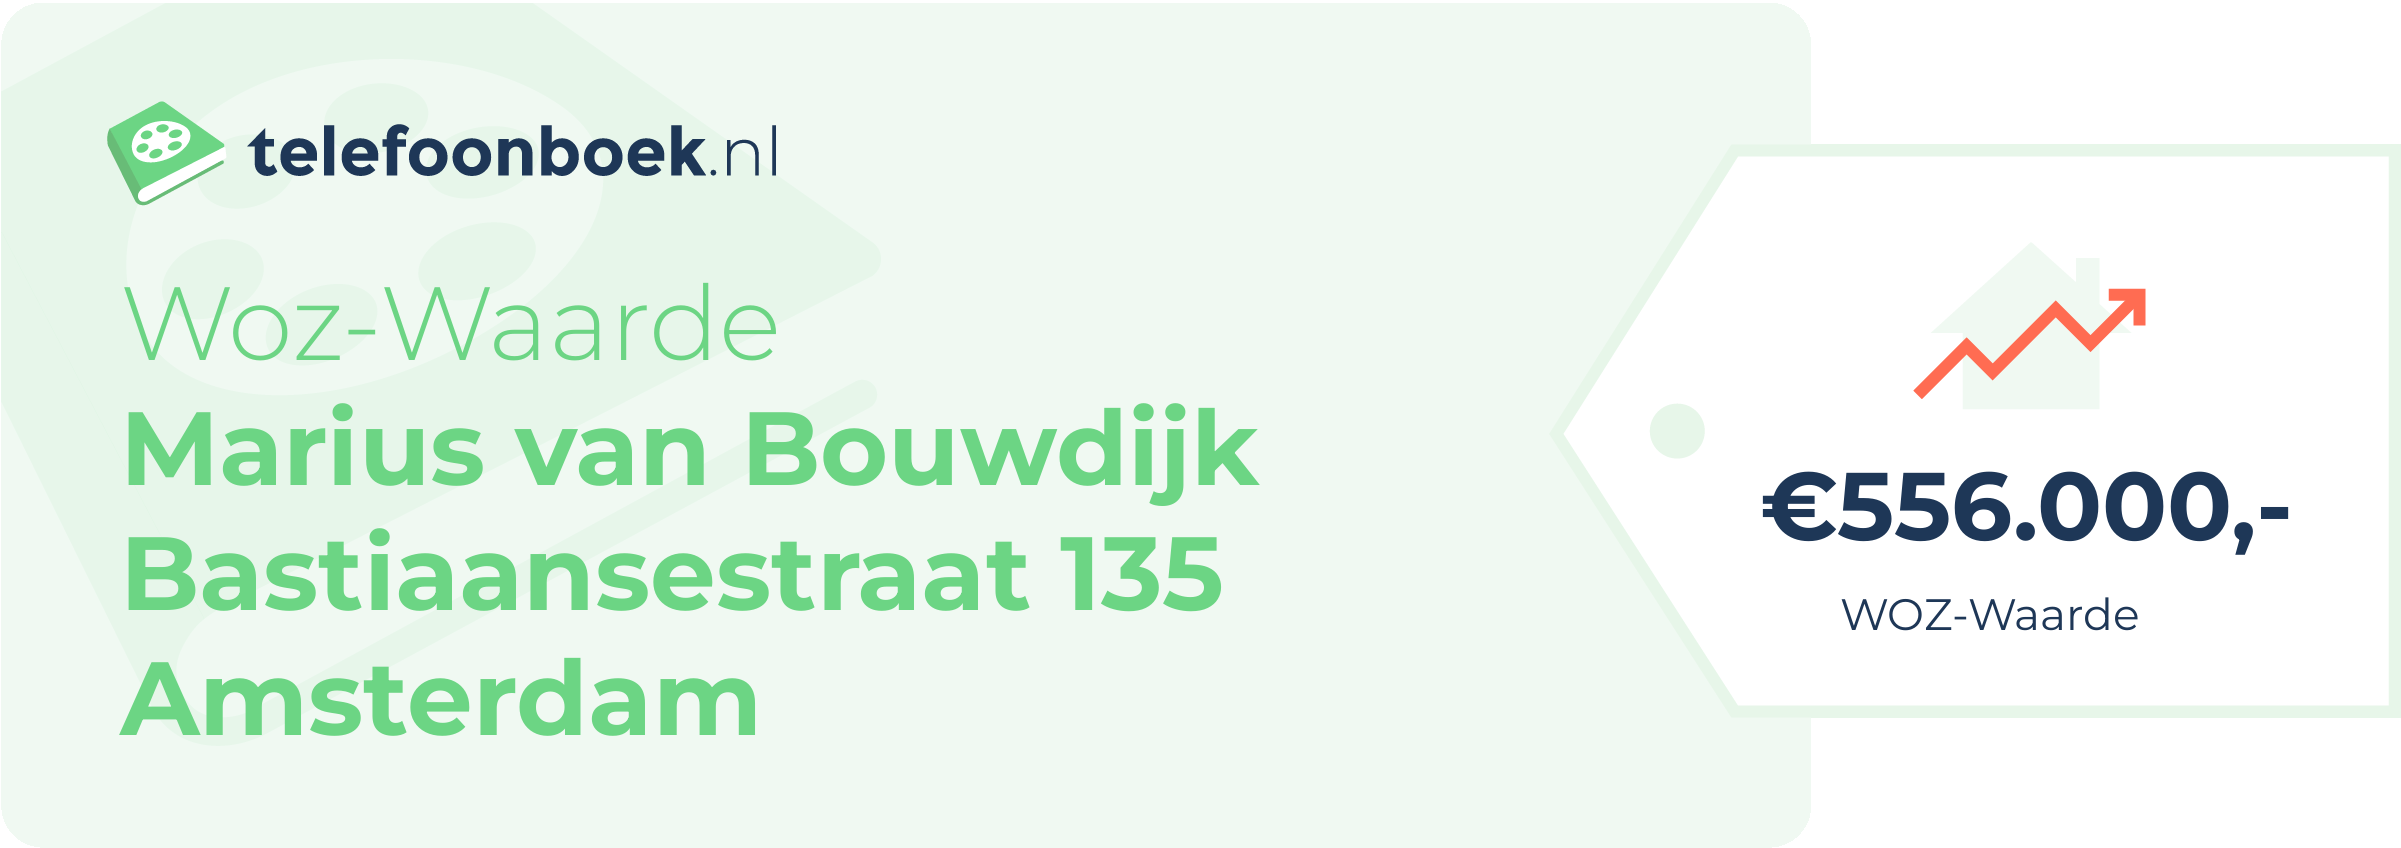 WOZ-waarde Marius Van Bouwdijk Bastiaansestraat 135 Amsterdam